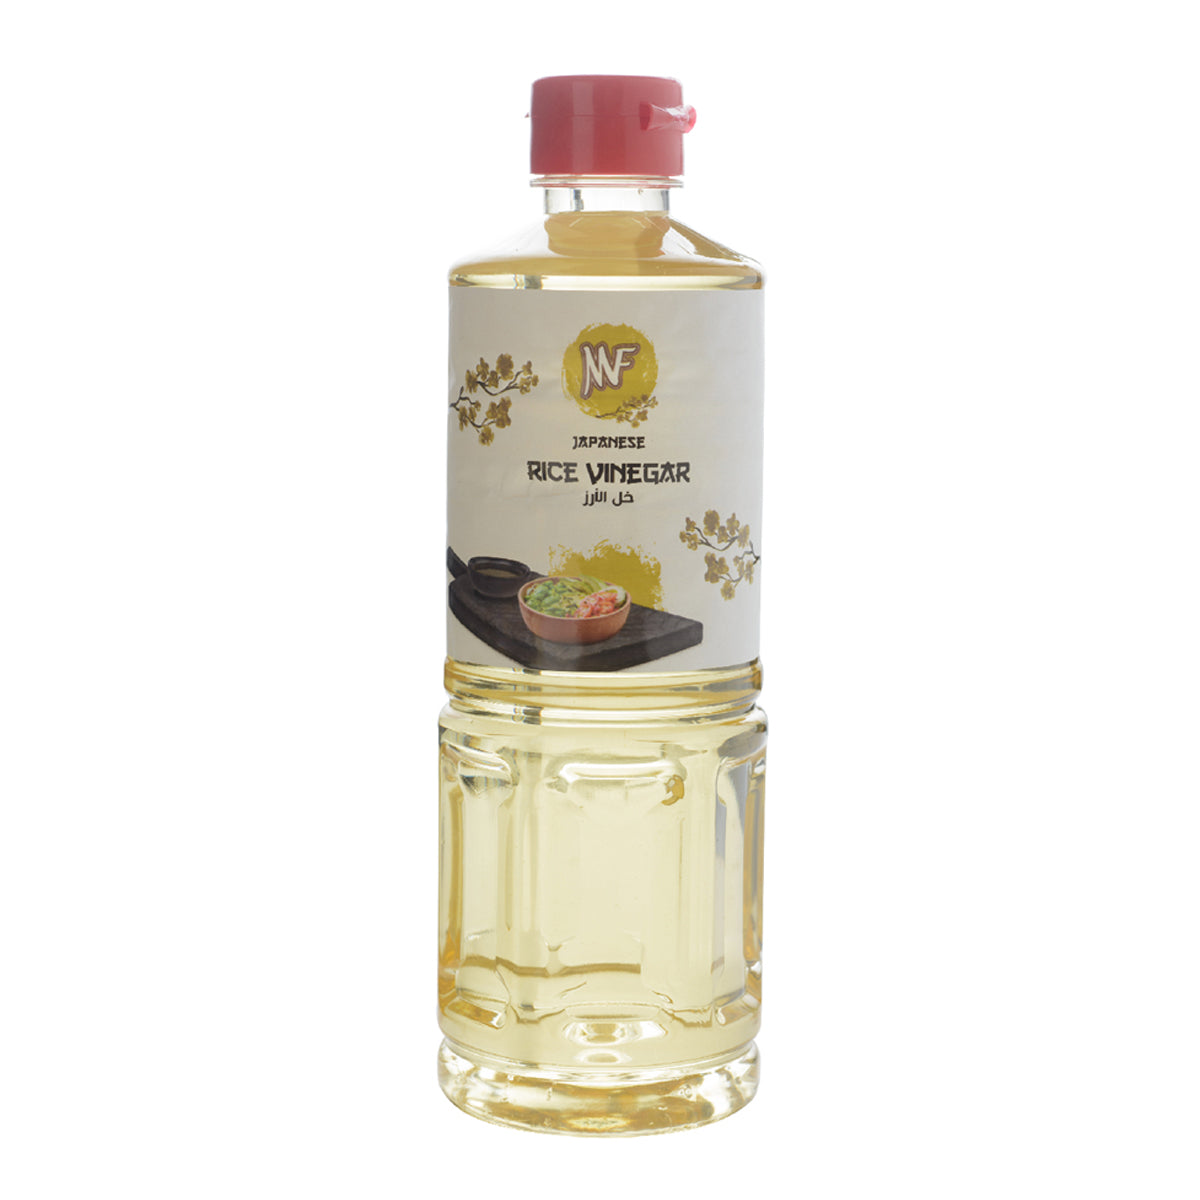 MF Japanese Rice Vinegar 500ml